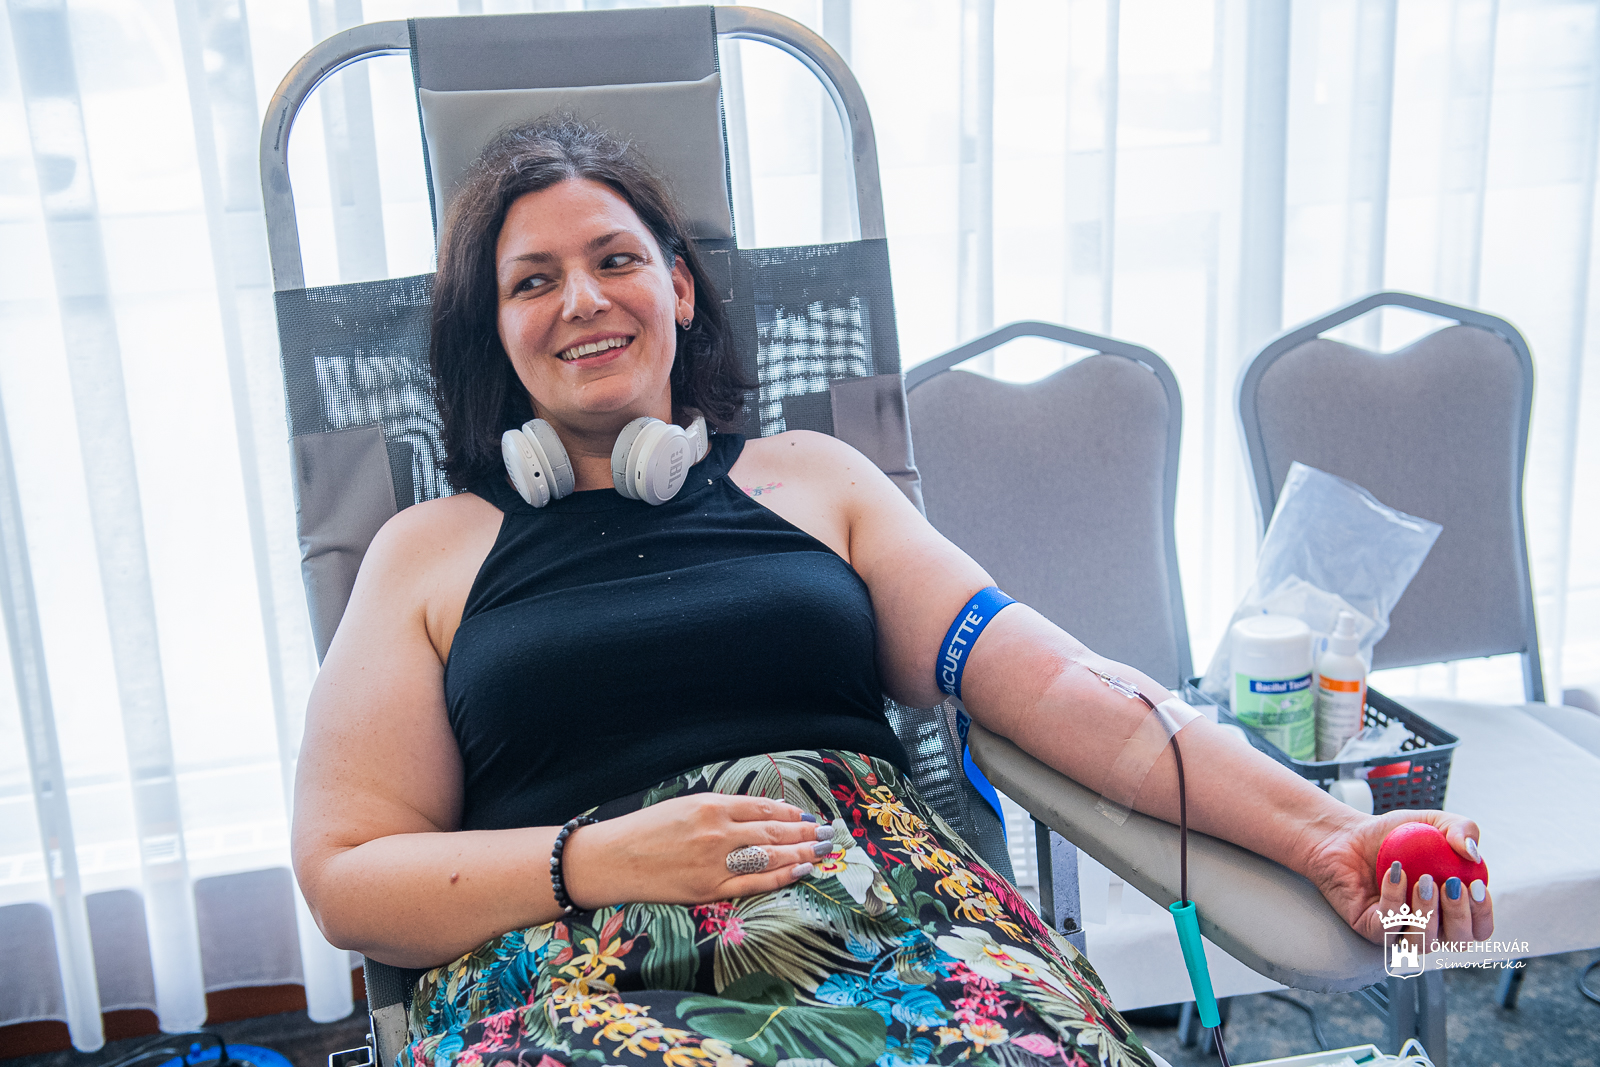 Adj vért! Ments életet! – Elindult a nyári véradó kampány Székesfehérváron